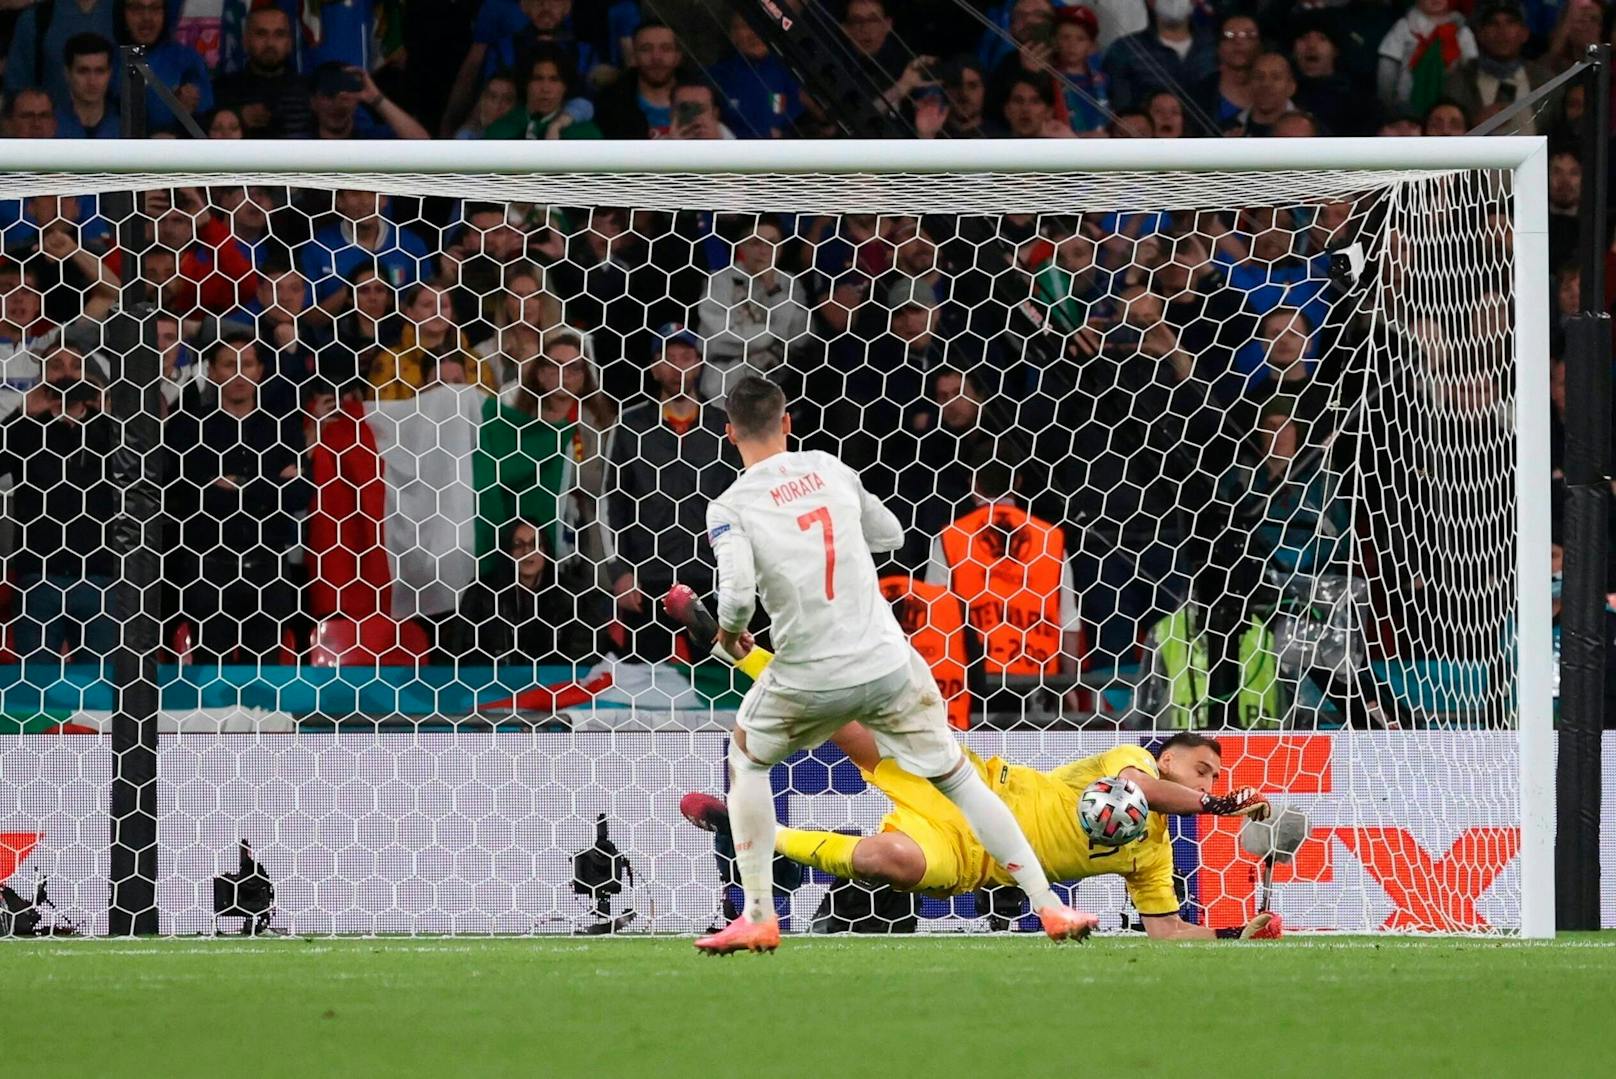 Im Halbfinale setzte sich Italien im Elferschießen gegen Spanien durch. Goalie Donnarumma wurde zum großen Helden.